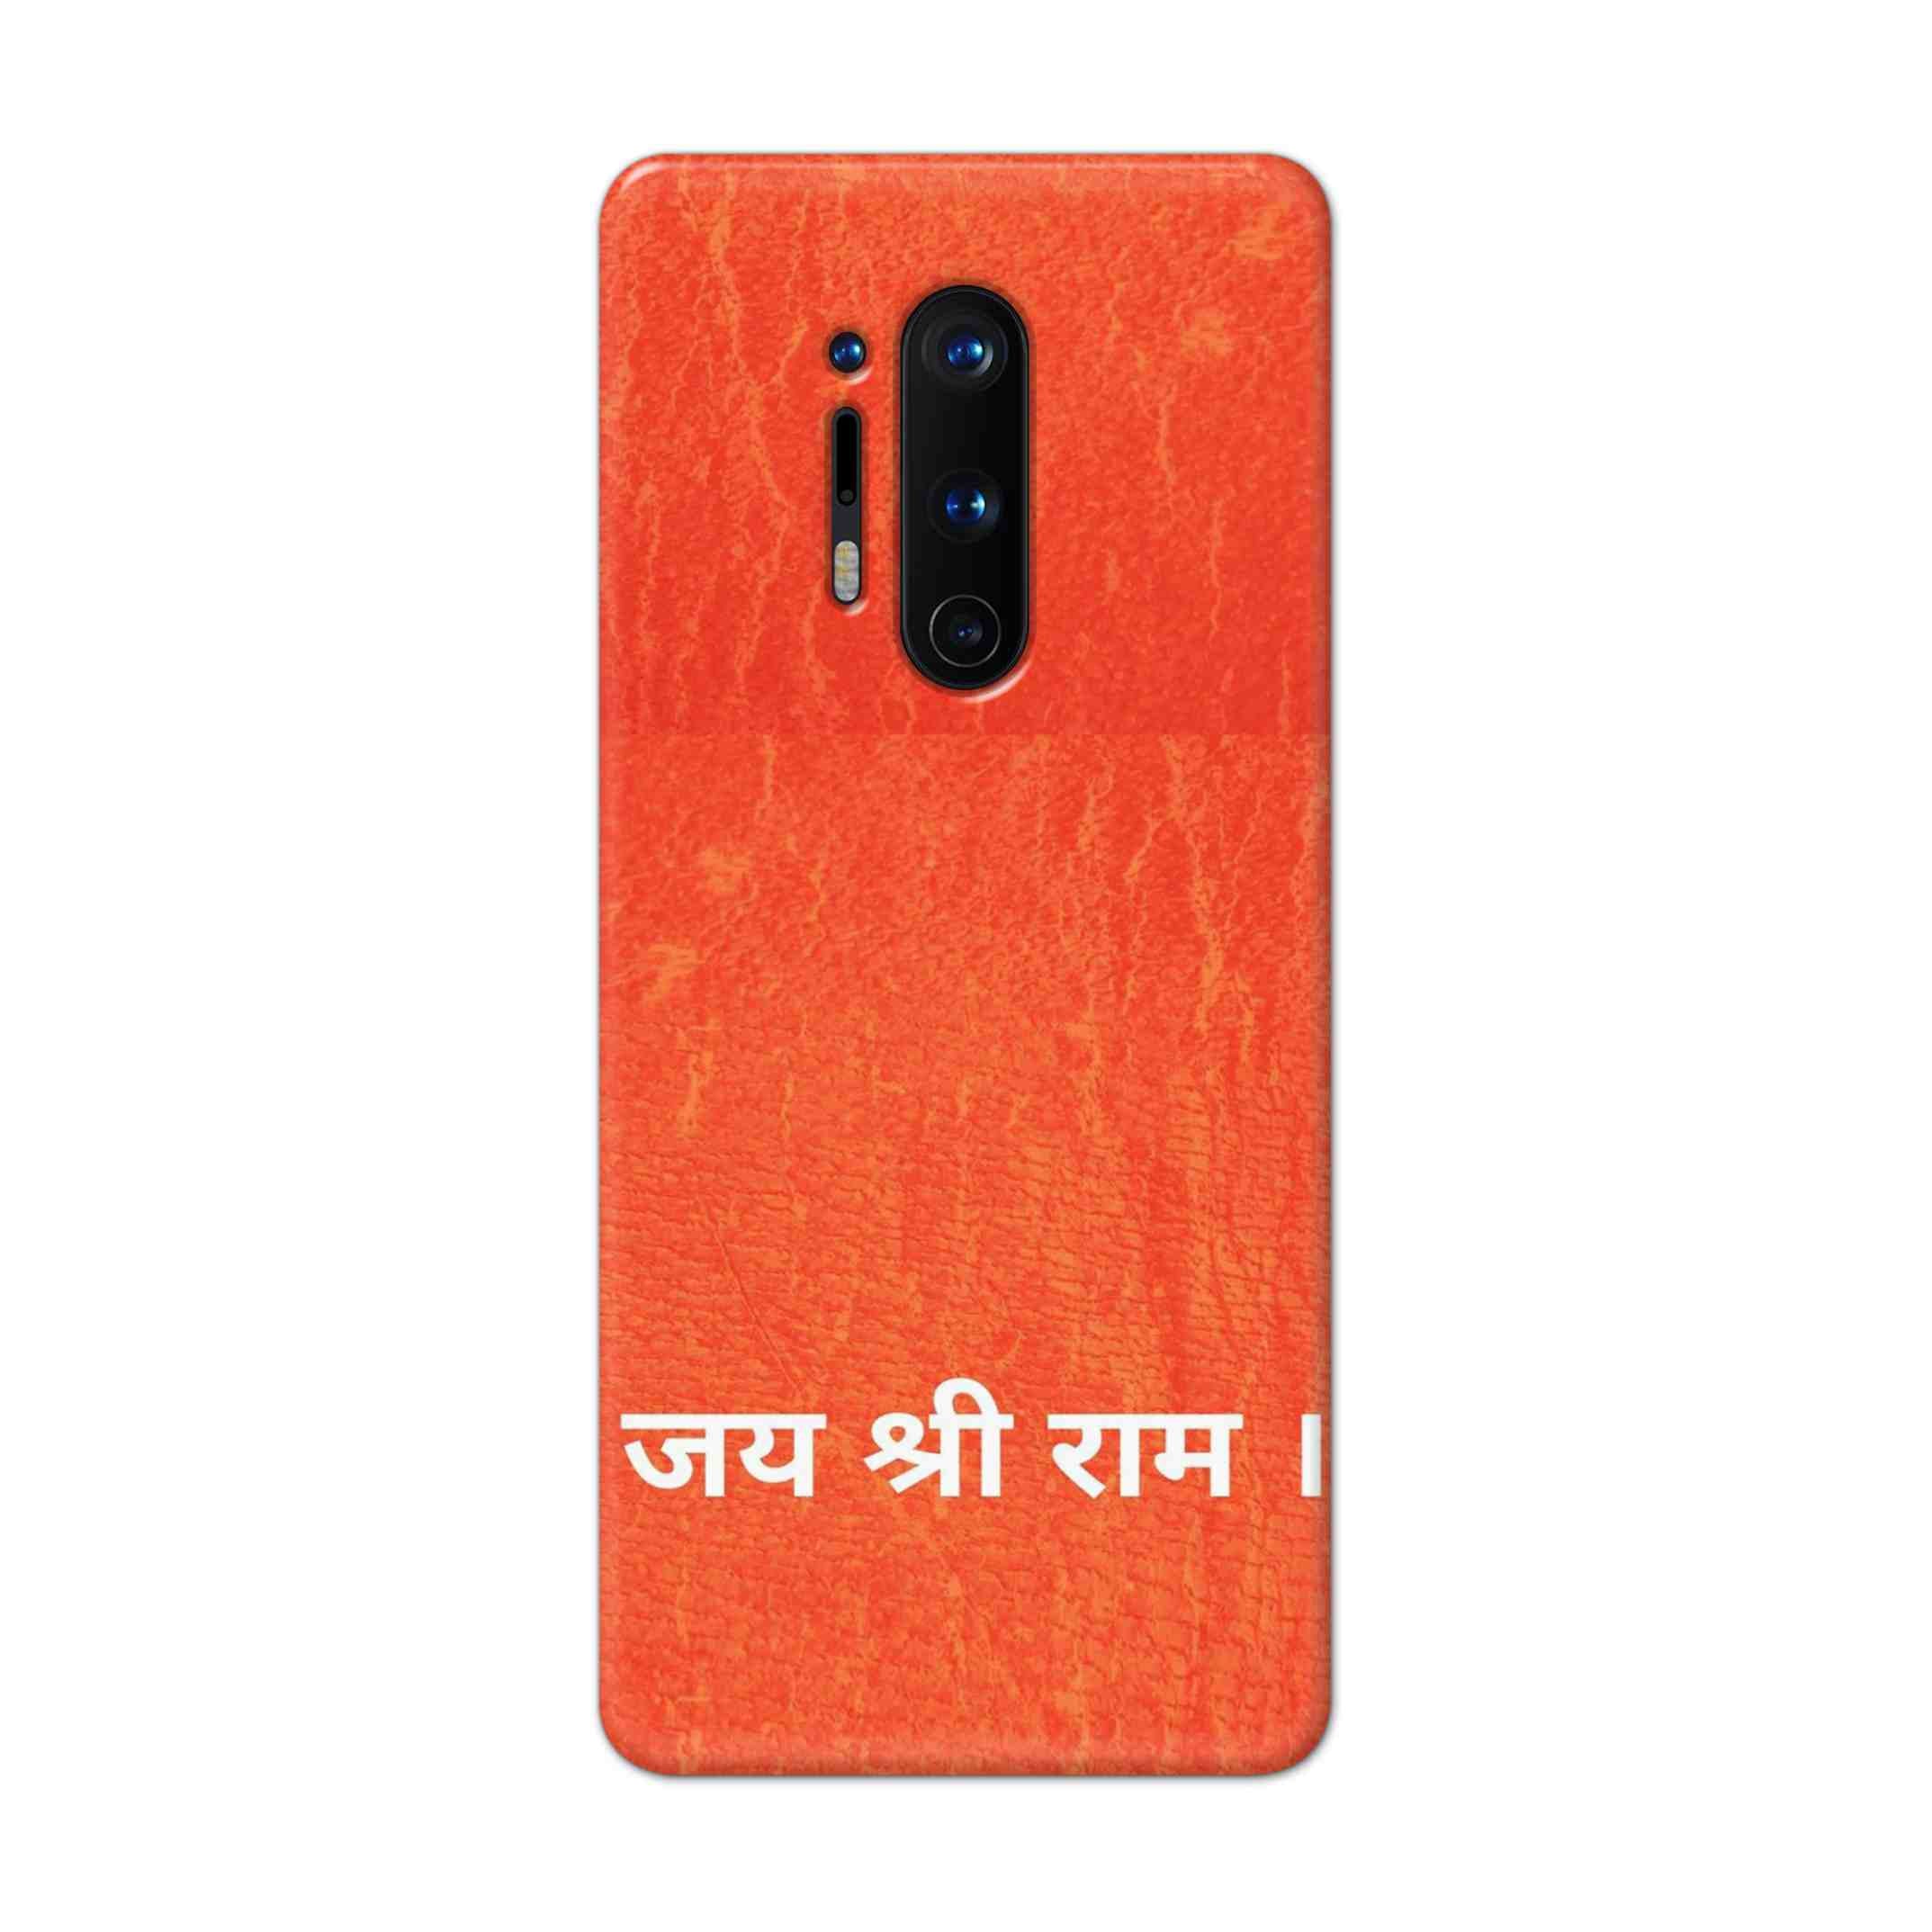 Buy Jai Shree Ram Hard Back Mobile Phone Case Cover For OnePlus 8 Pro Online